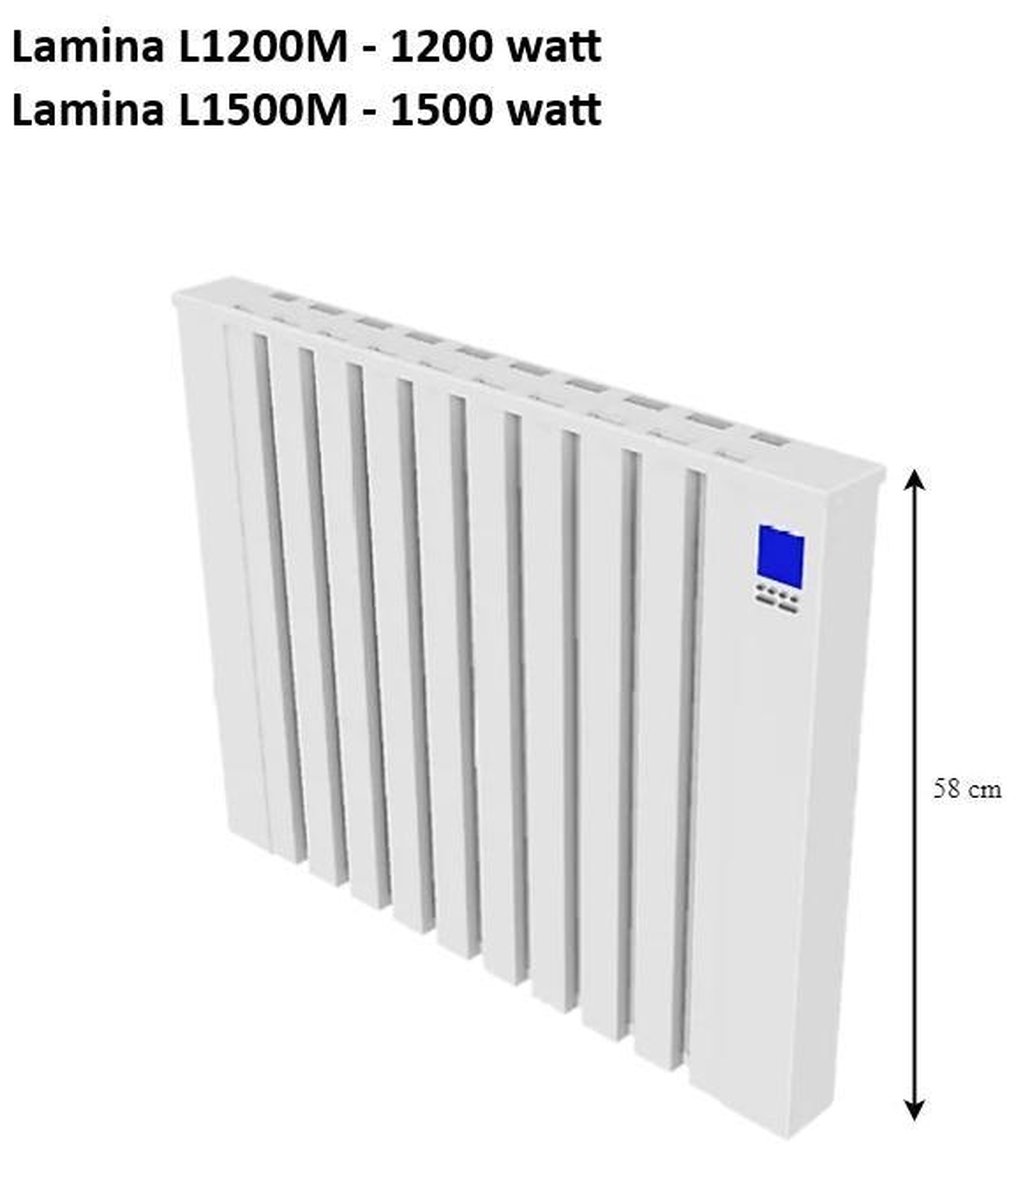 Speksteenradiator;Lamina Electrische radiator met koalitsteen 750 Watt ; Voor ca | bol.com